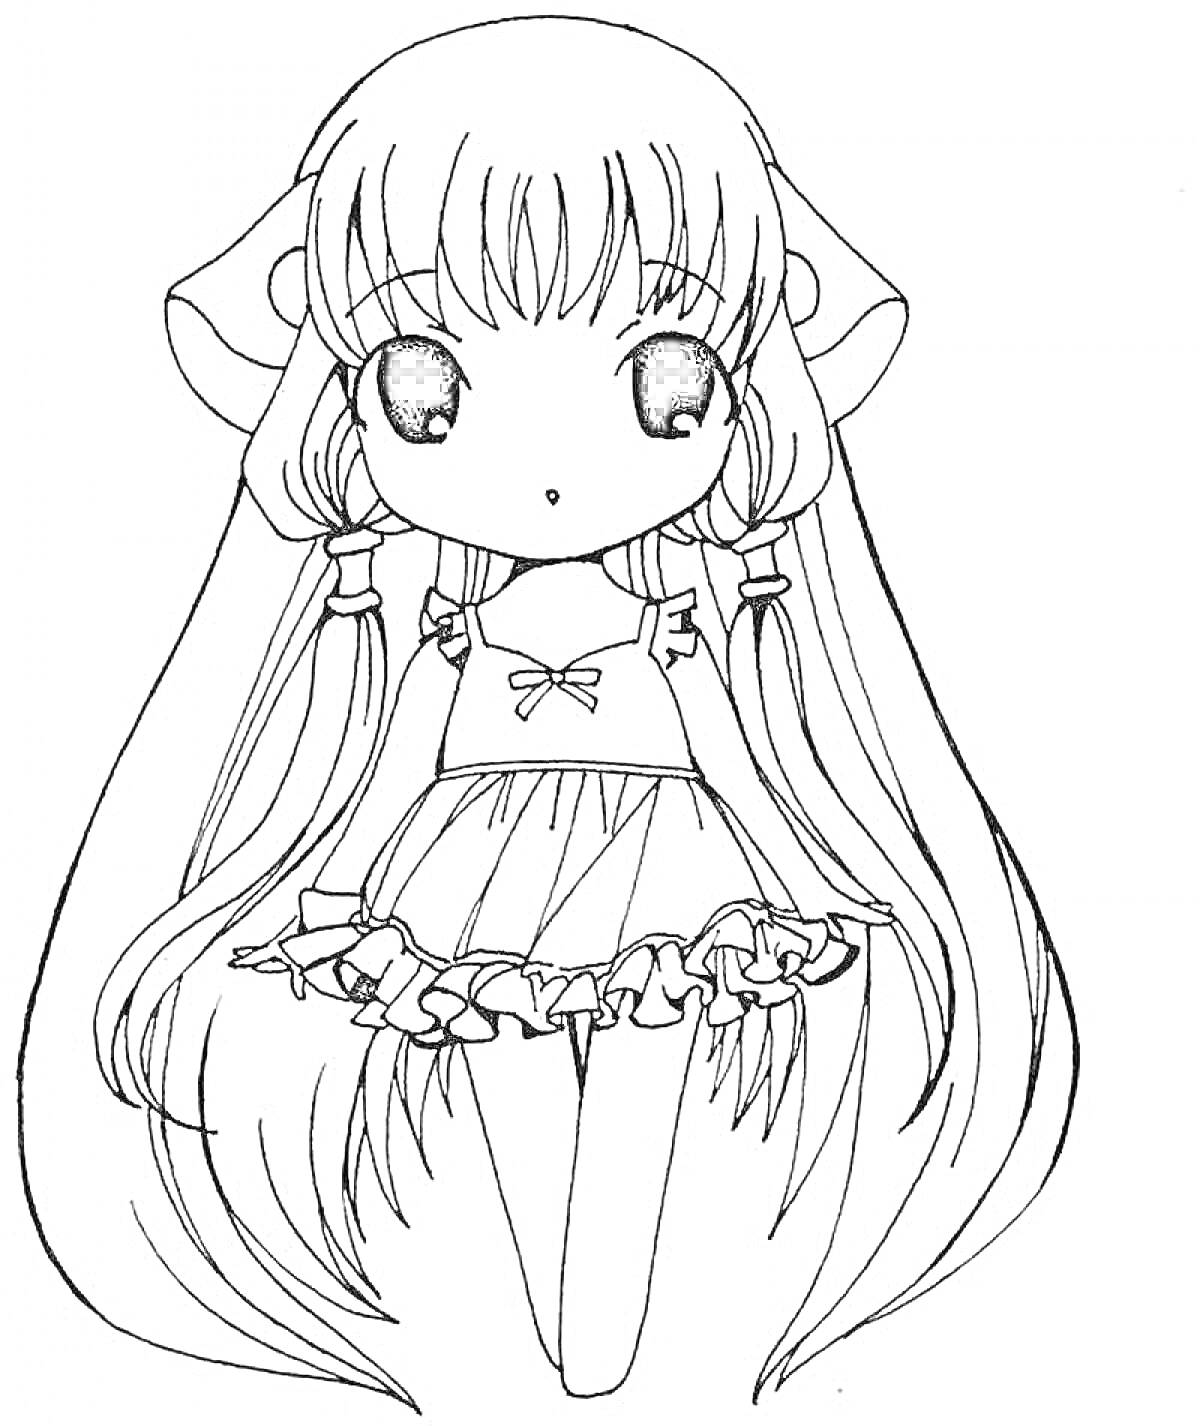 Раскраска Девочка-аниме с длинными волосами и бантом, платье с рюшем